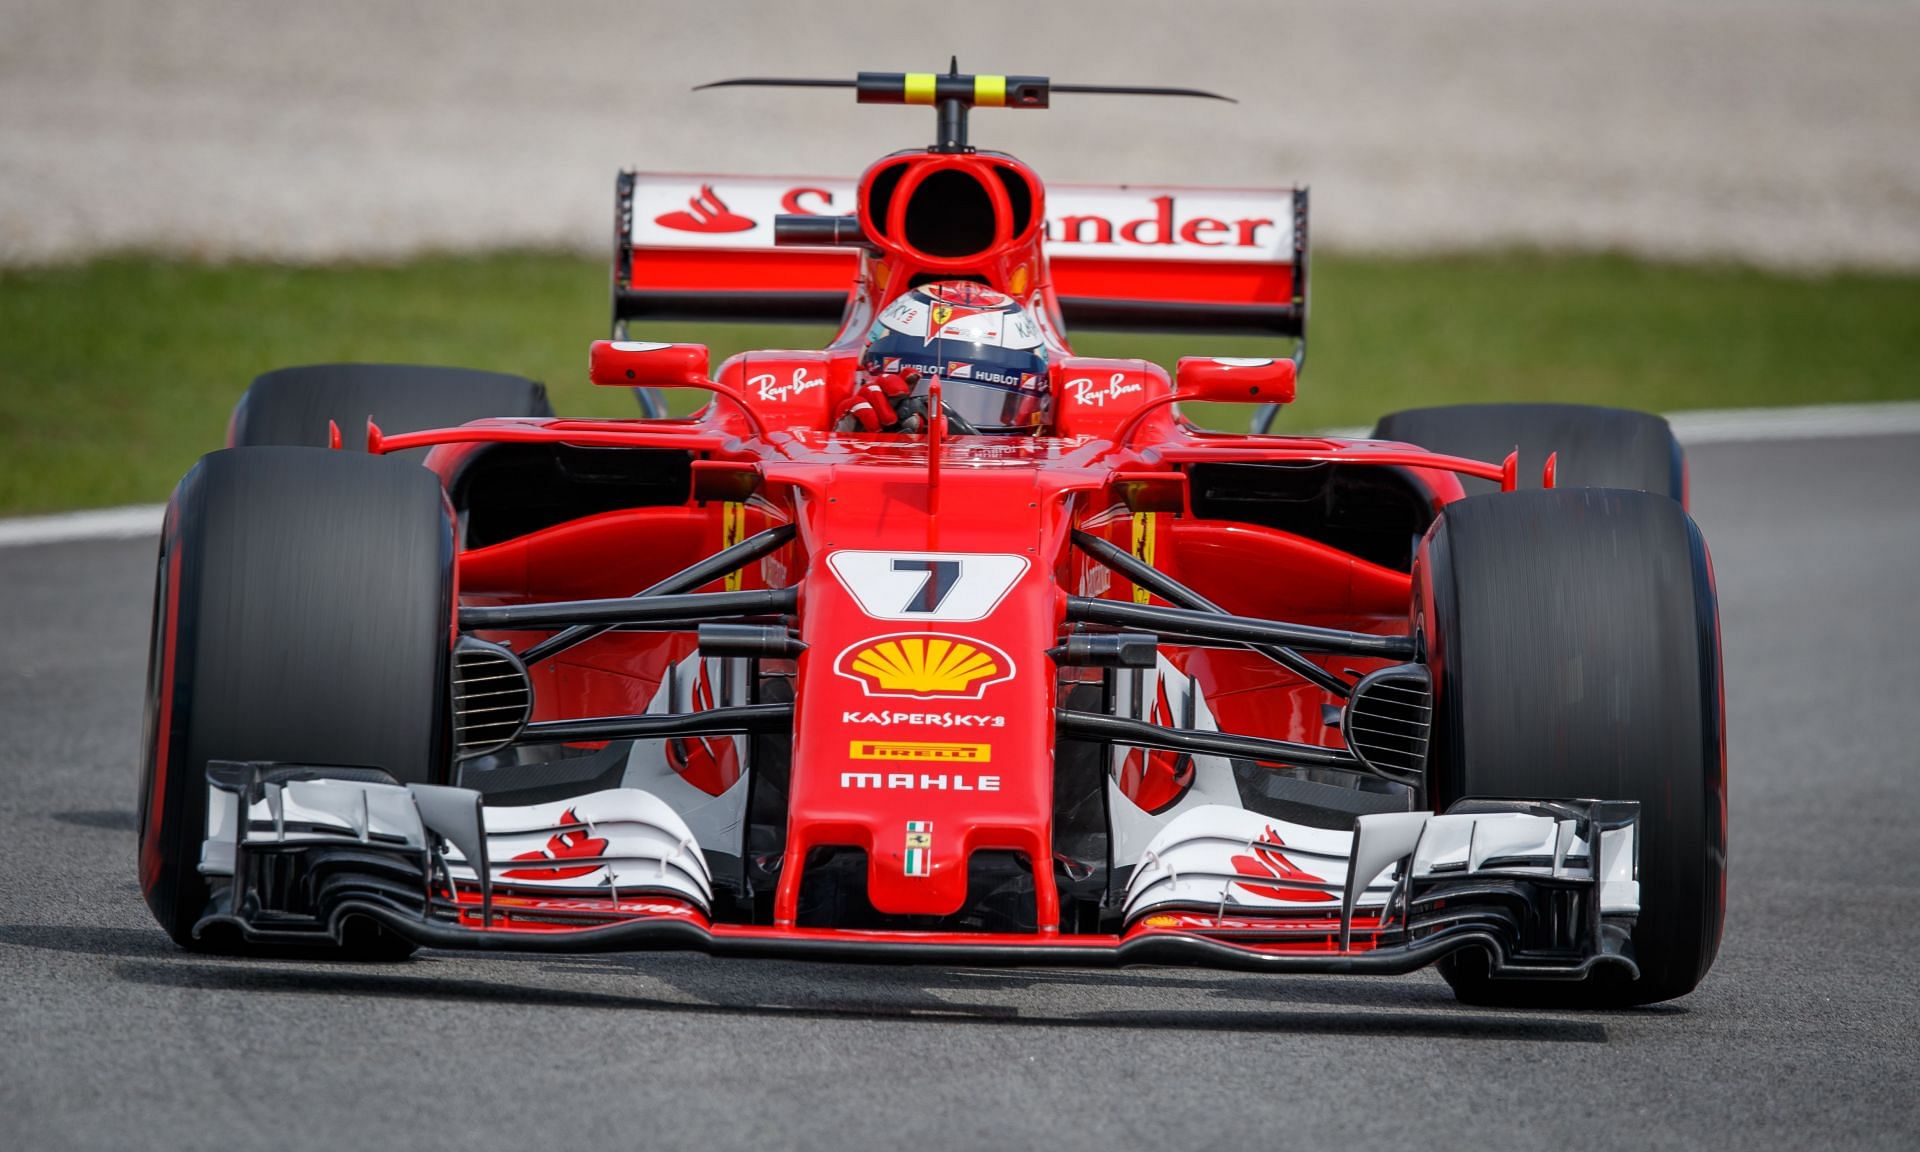 Santander last sponsored Ferrari in 2017